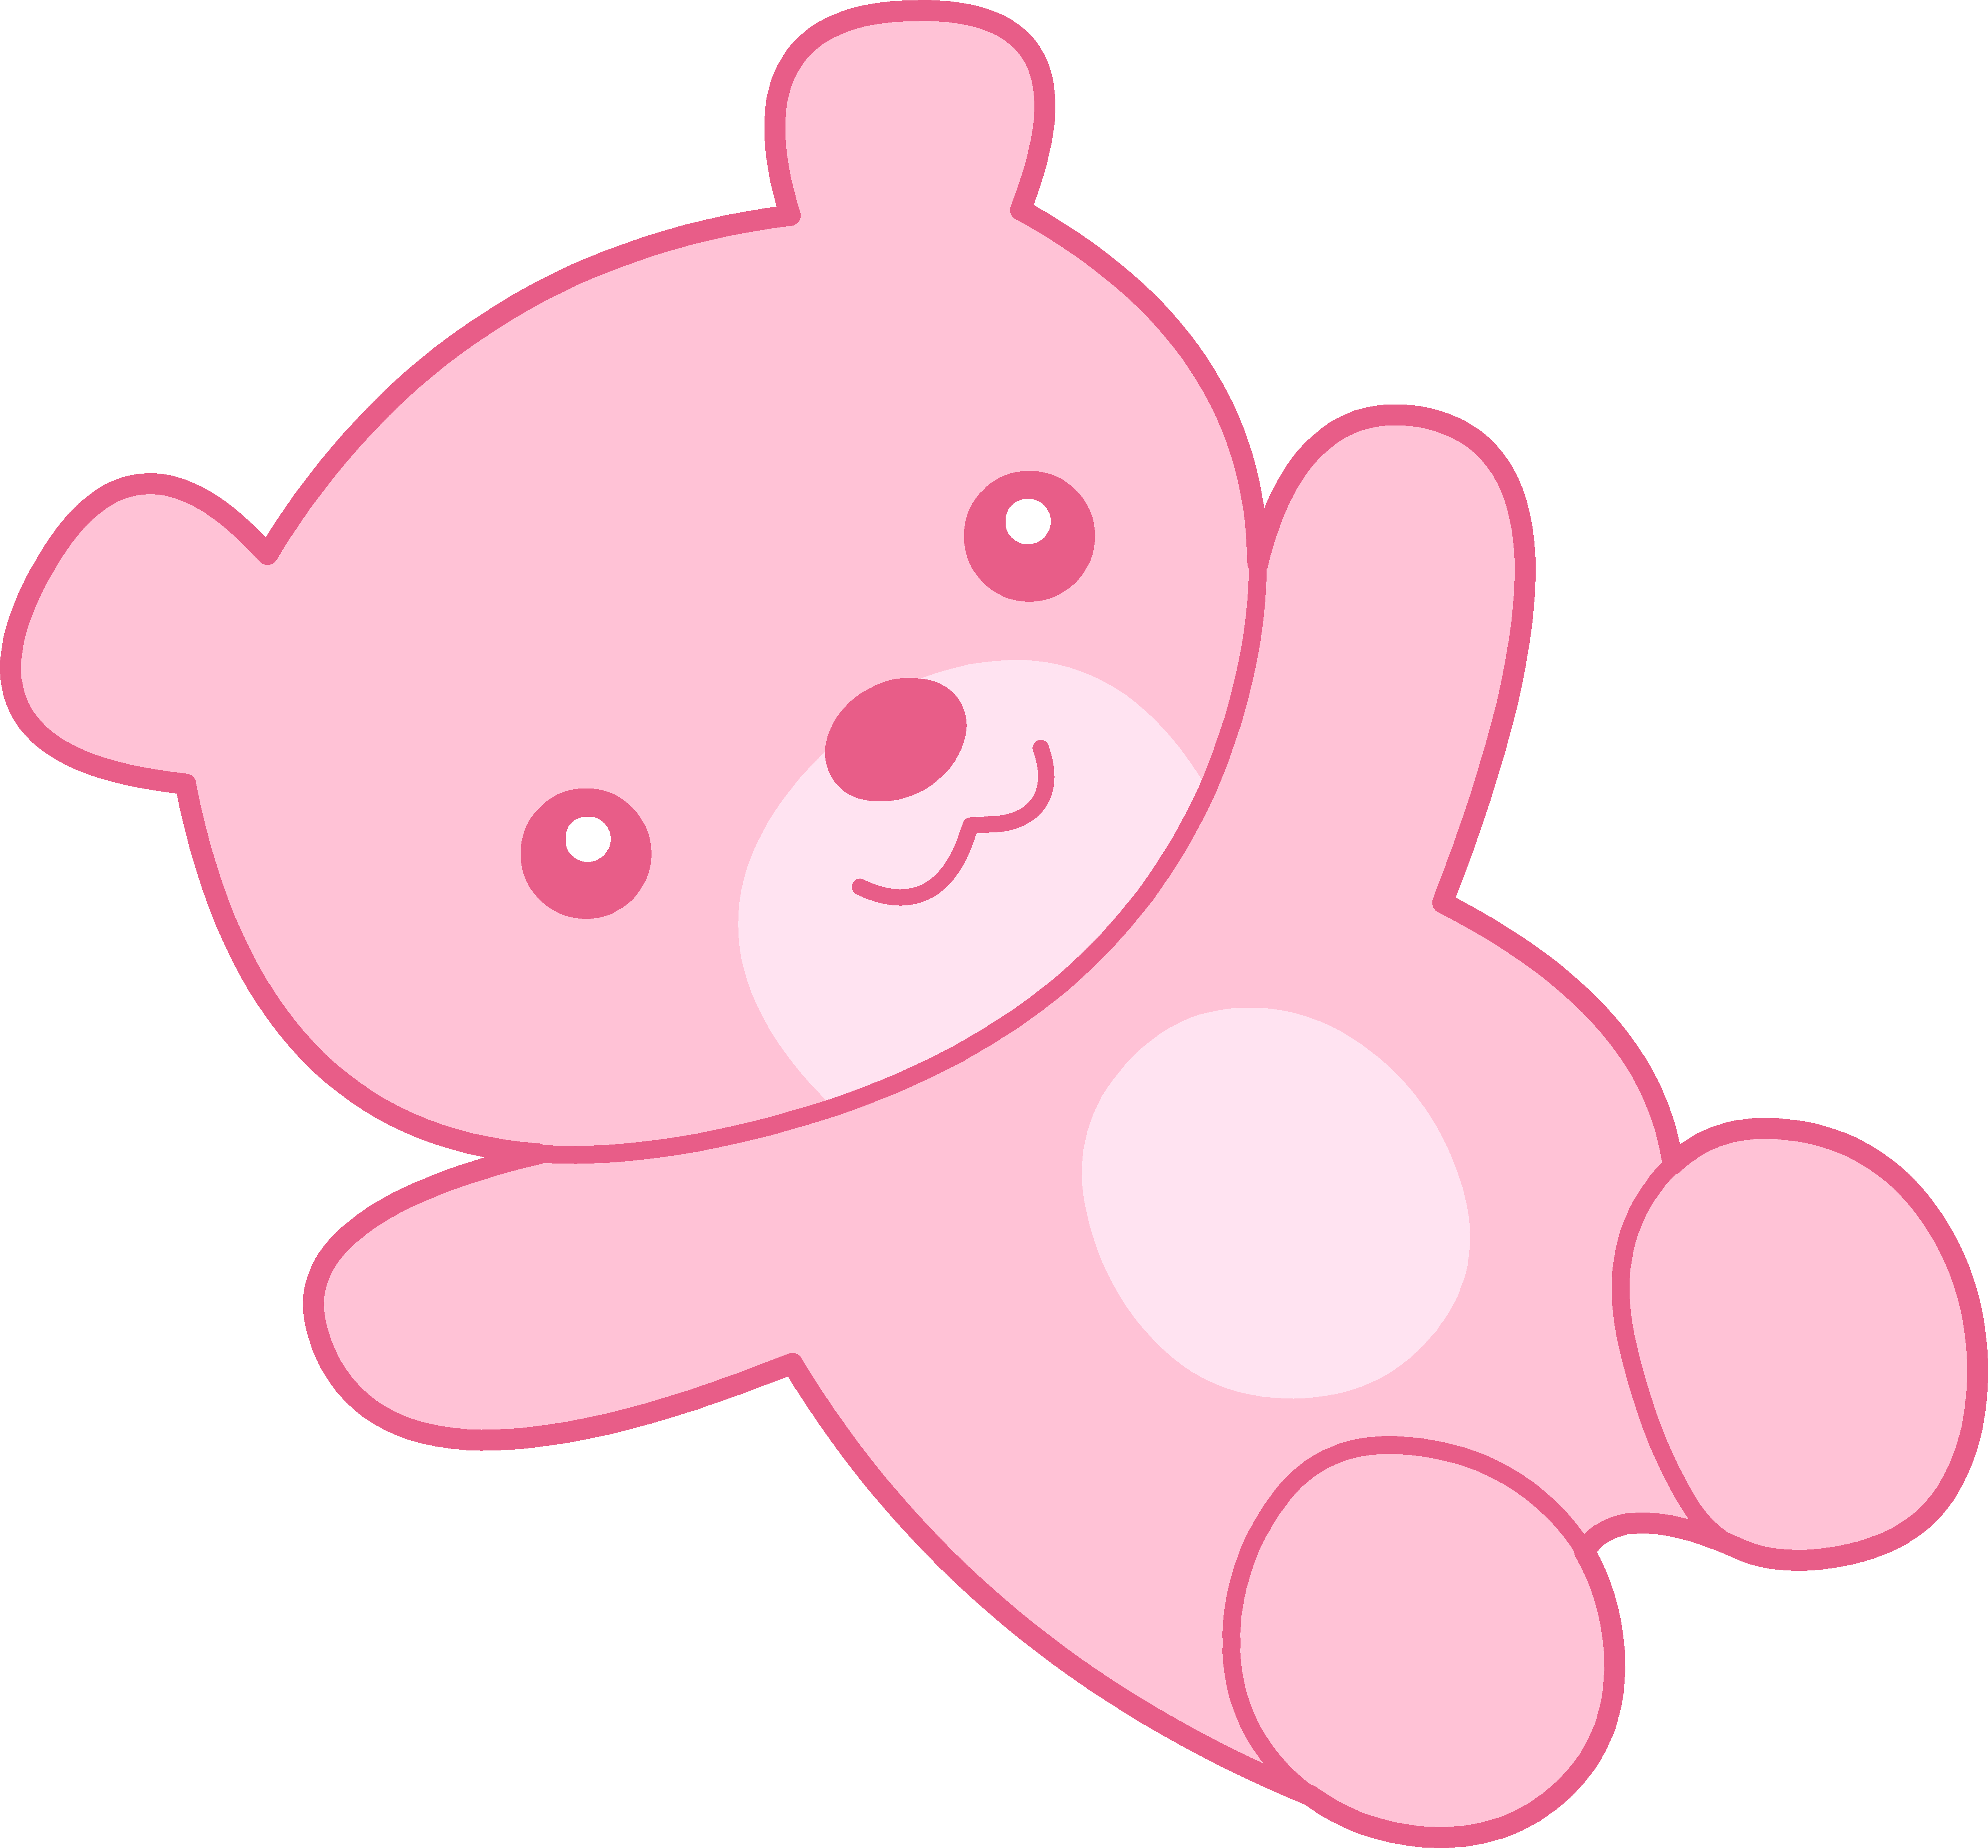 Cute pink teddy.